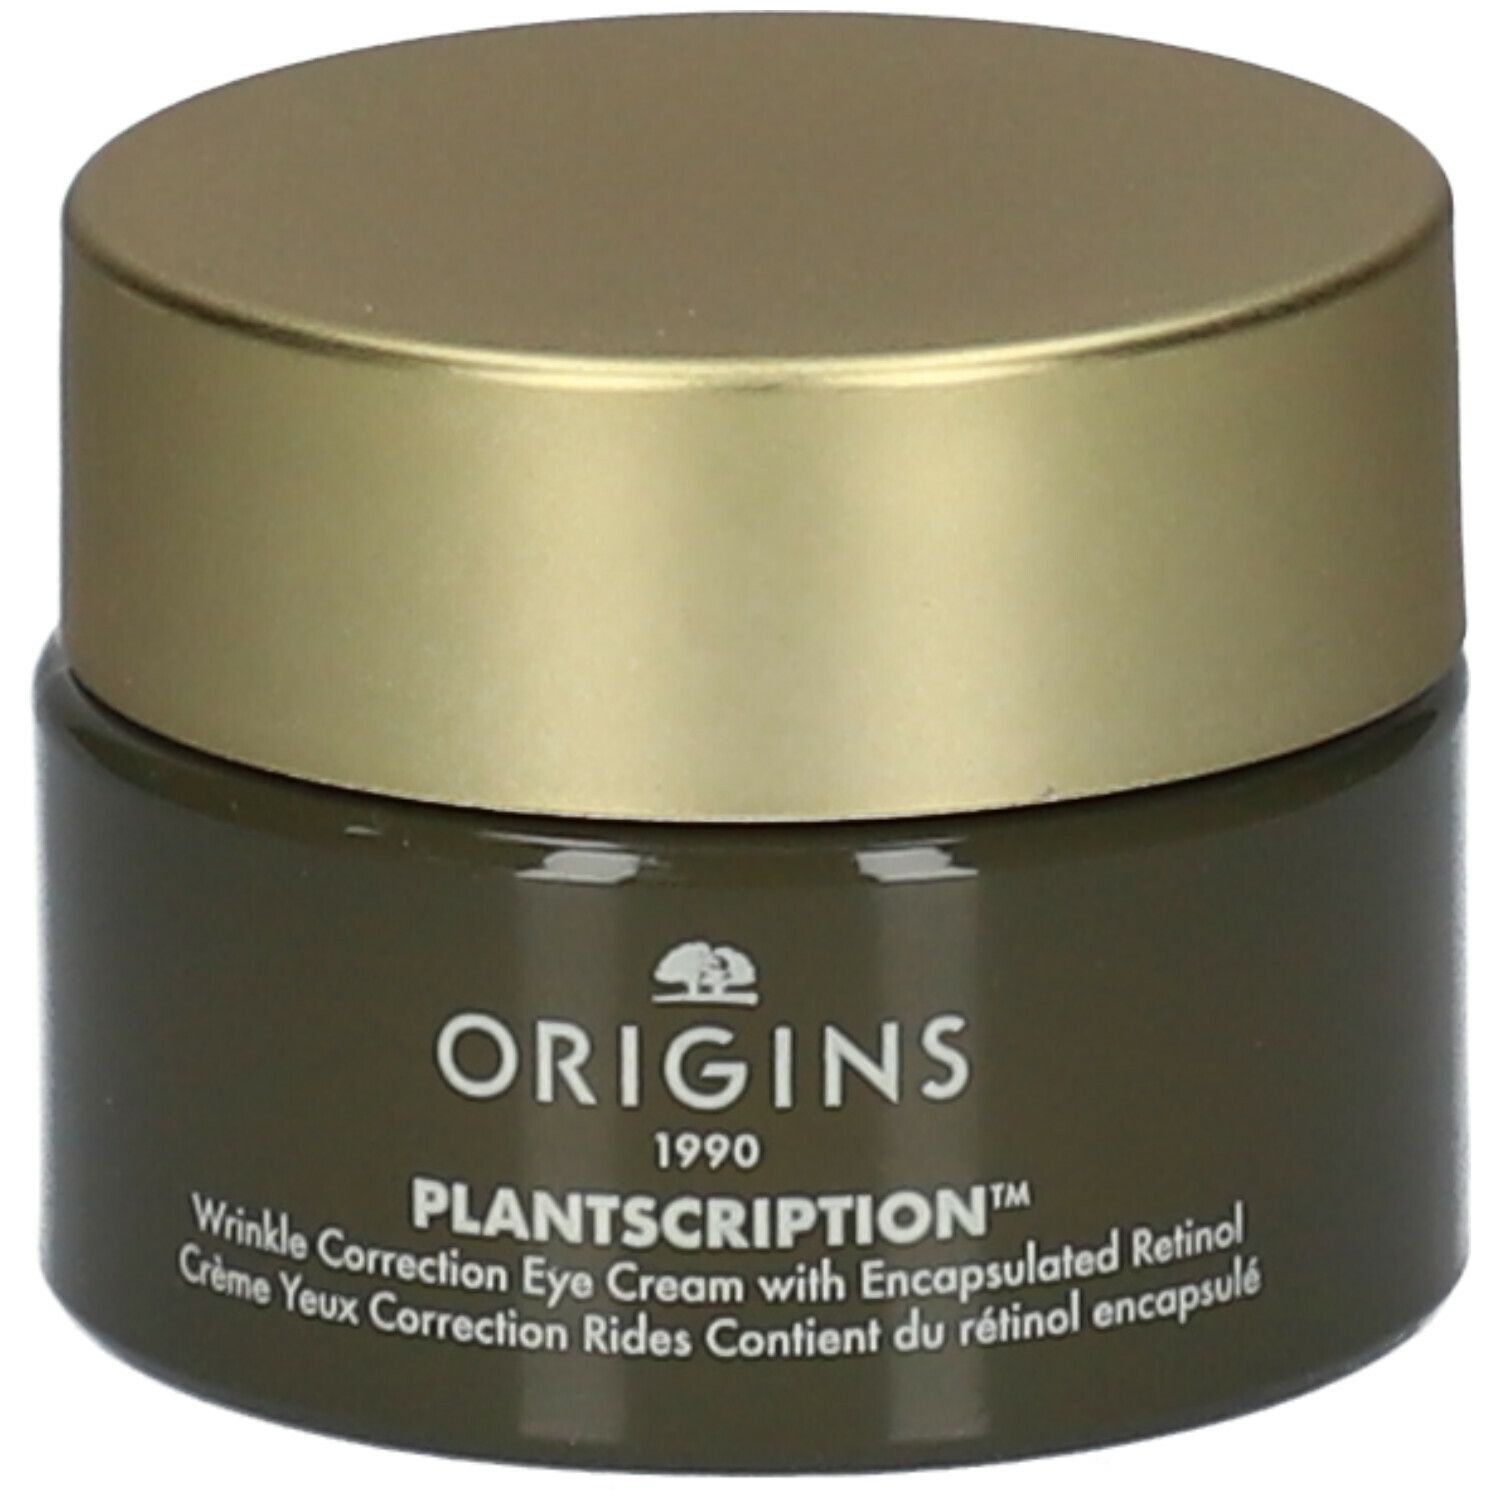 Origins Plantscription™ Crème Yeux Correction Rides Contient du Rétinol encapsulé